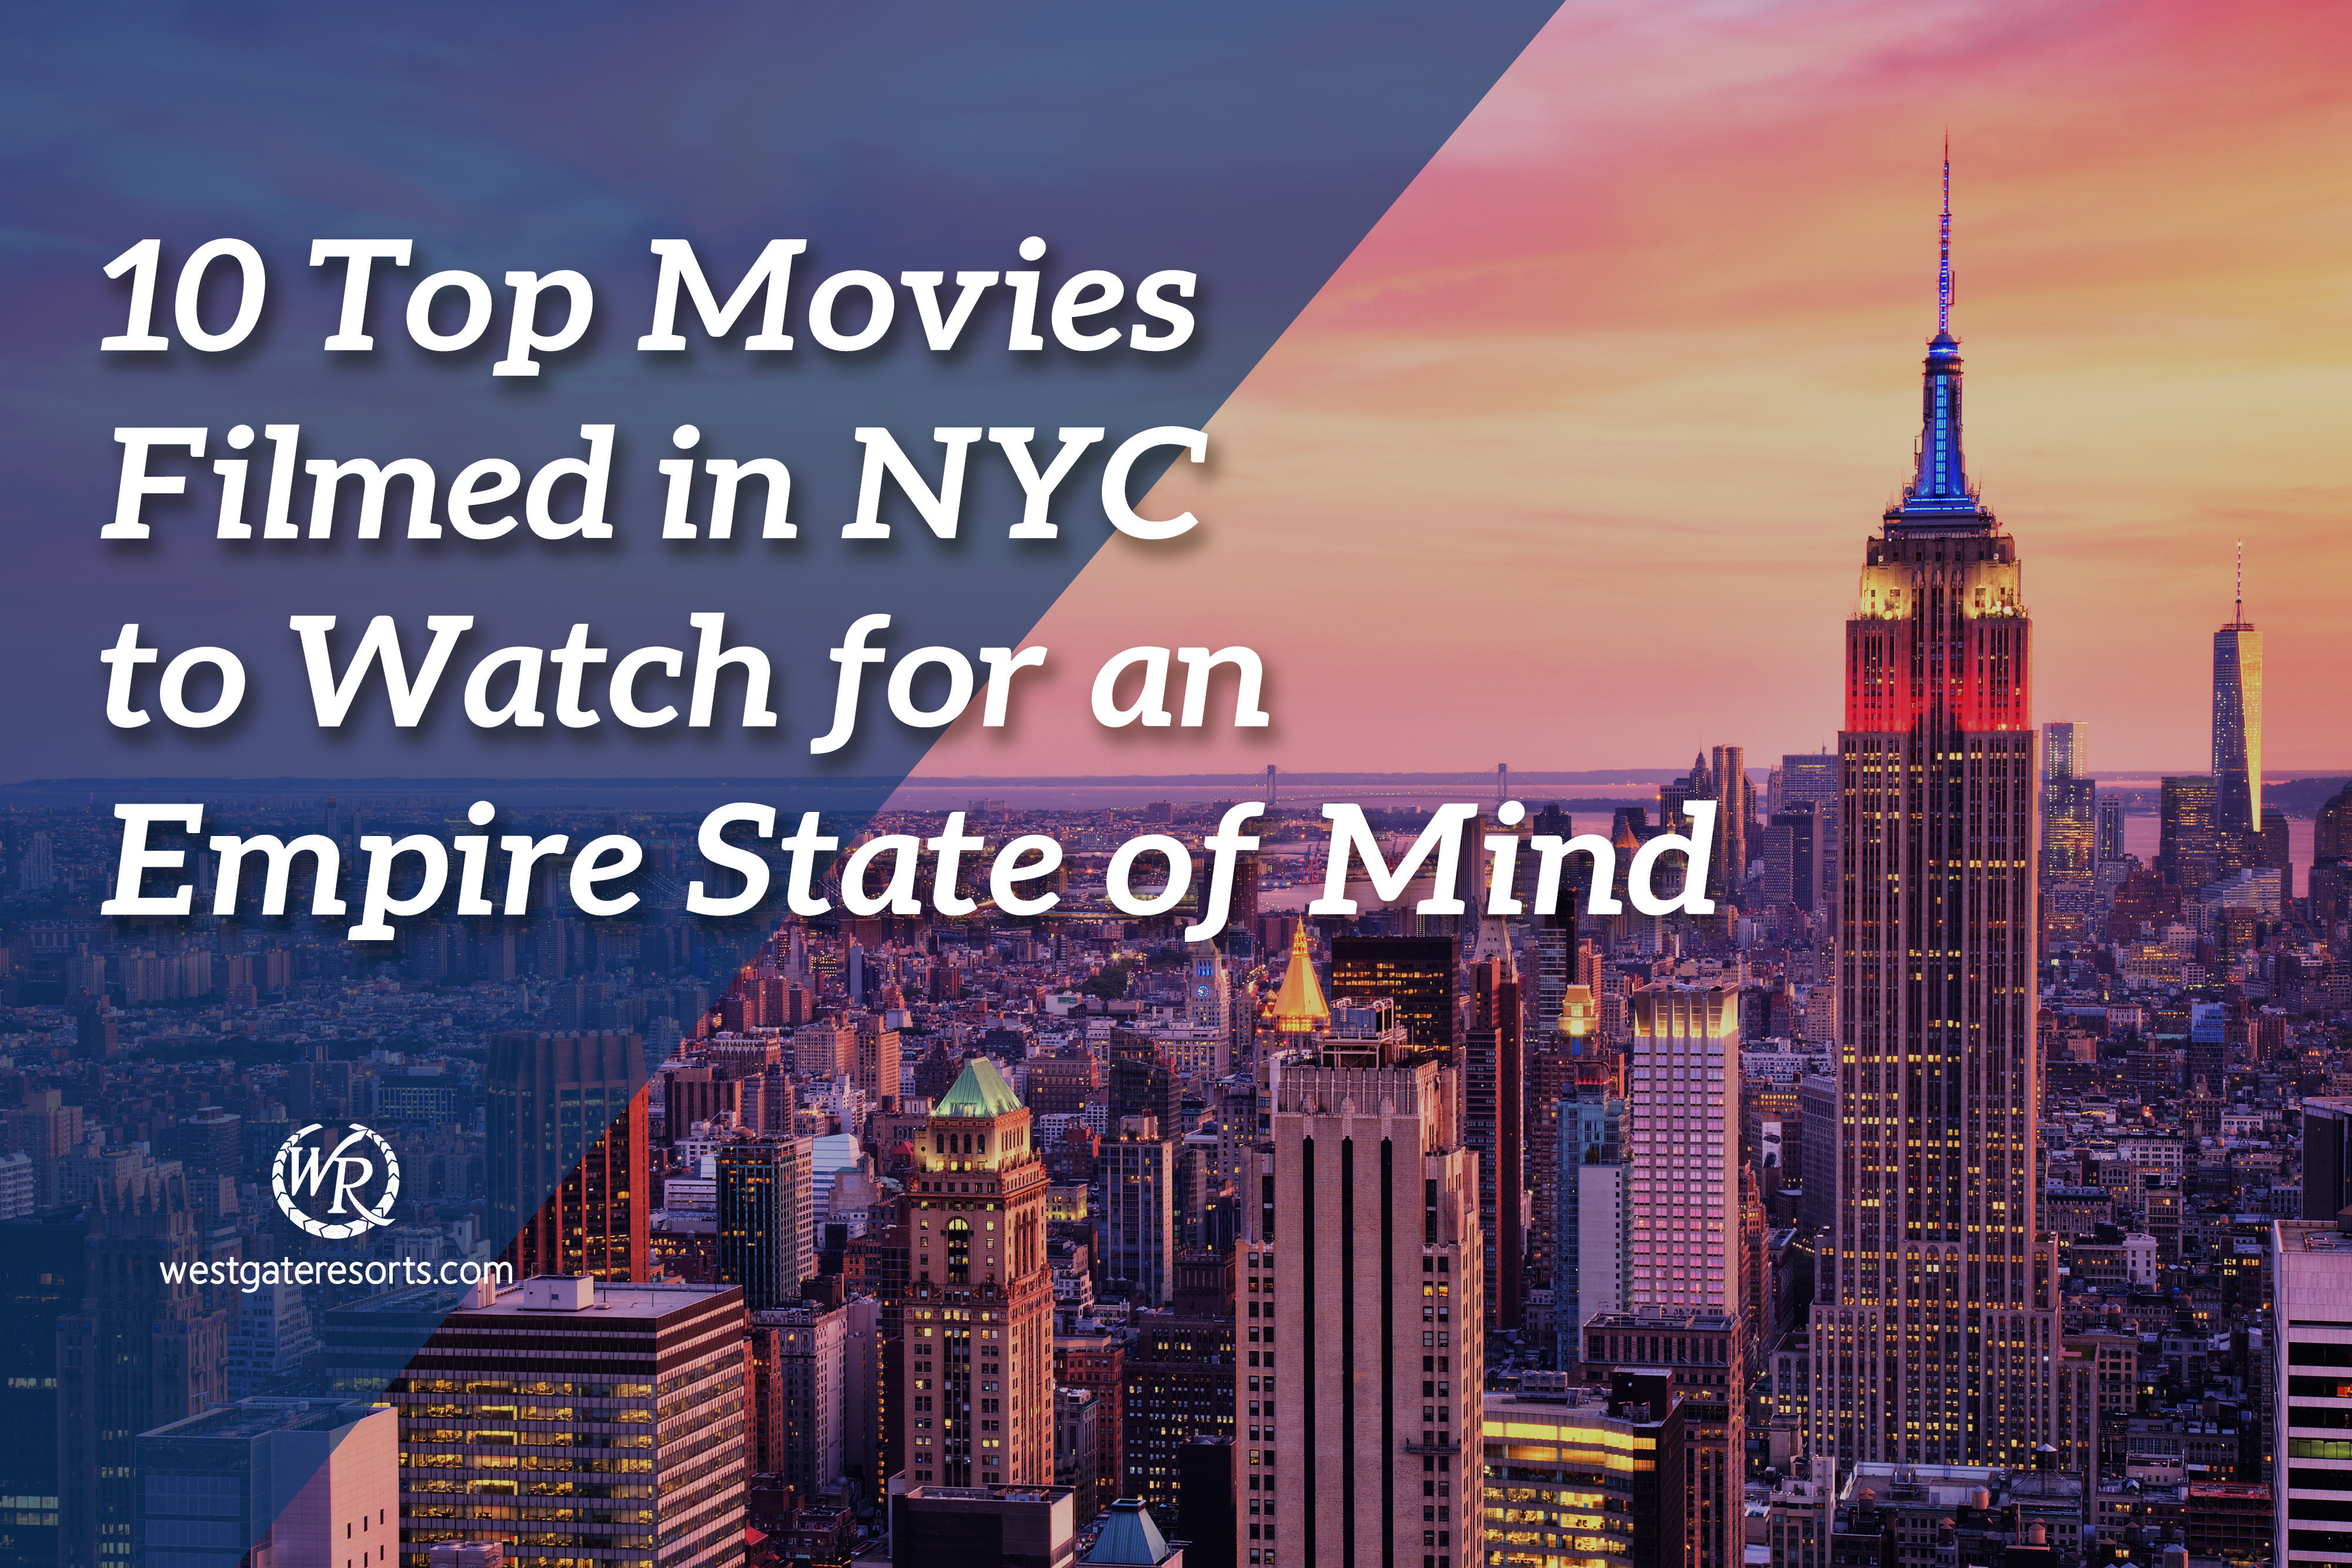 Las 10 mejores películas filmadas en Nueva York para ver un Empire State of Mind